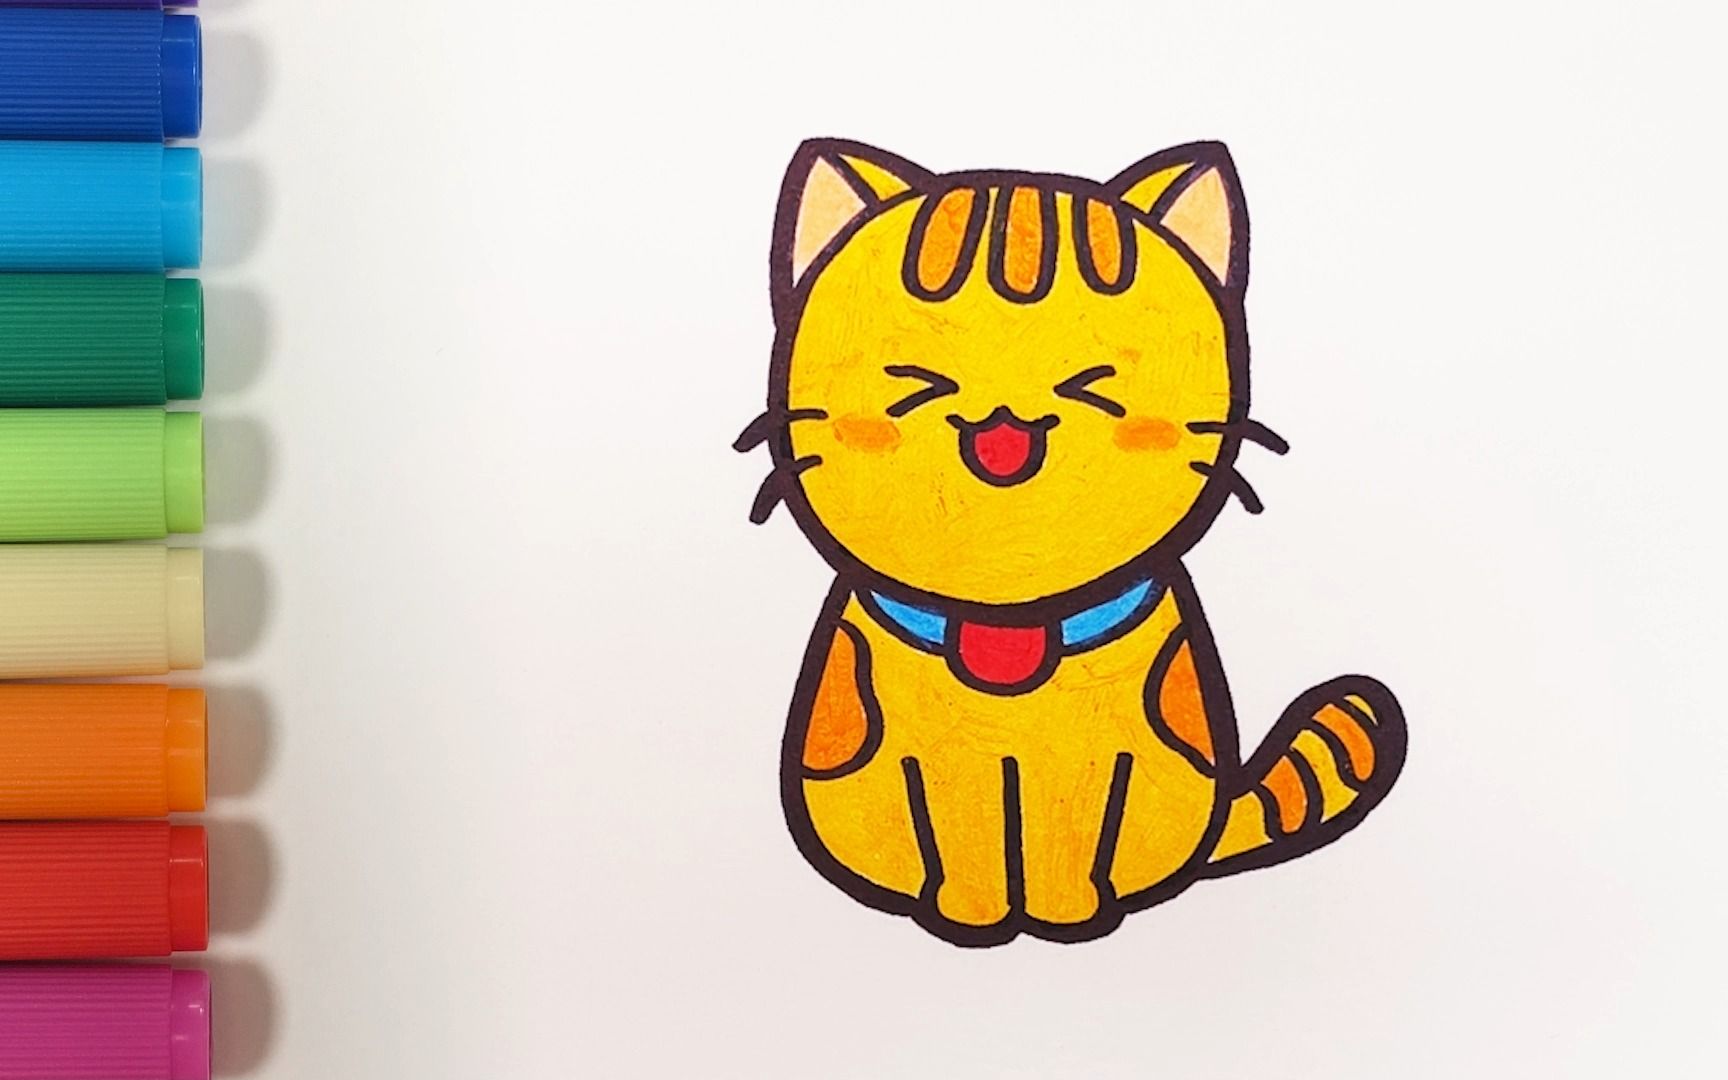 可爱的小猫简笔画涂色图片